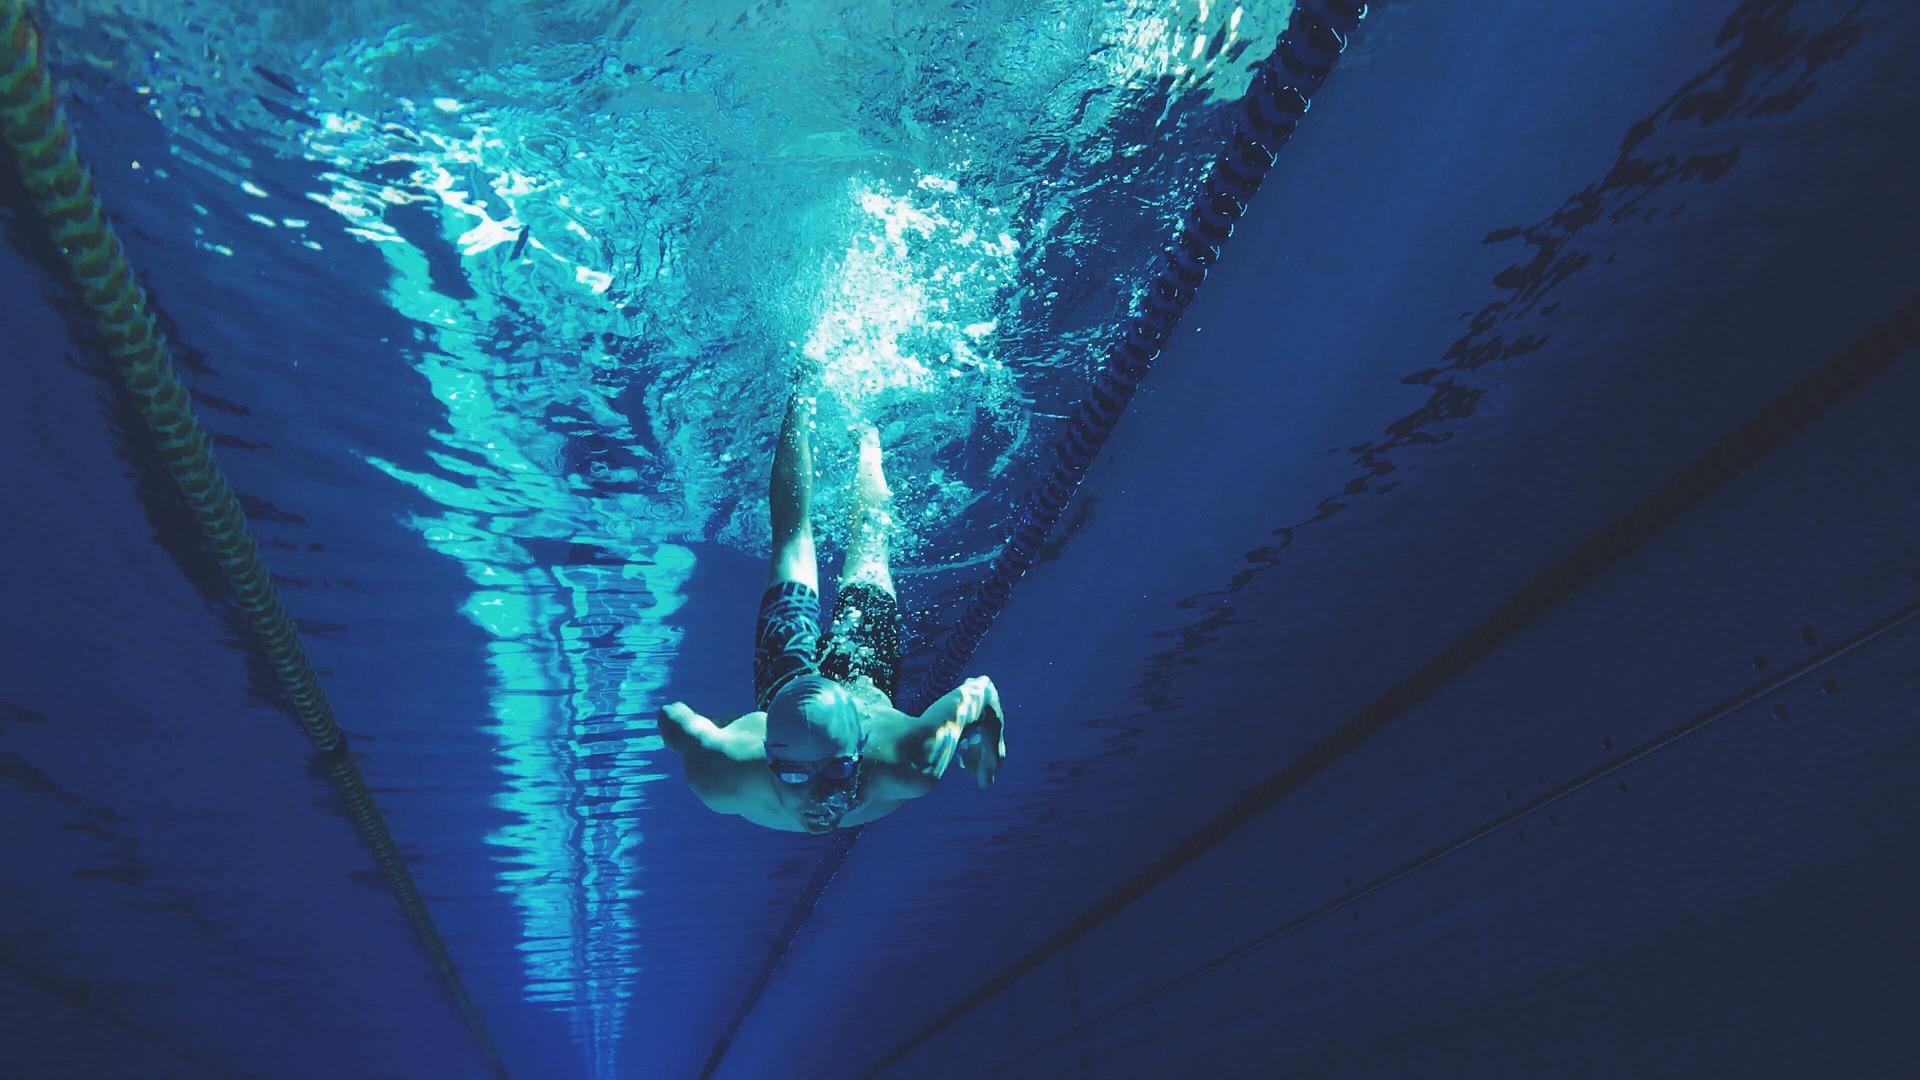 Korzyści z pływania niezależnie od poziomu sprawności